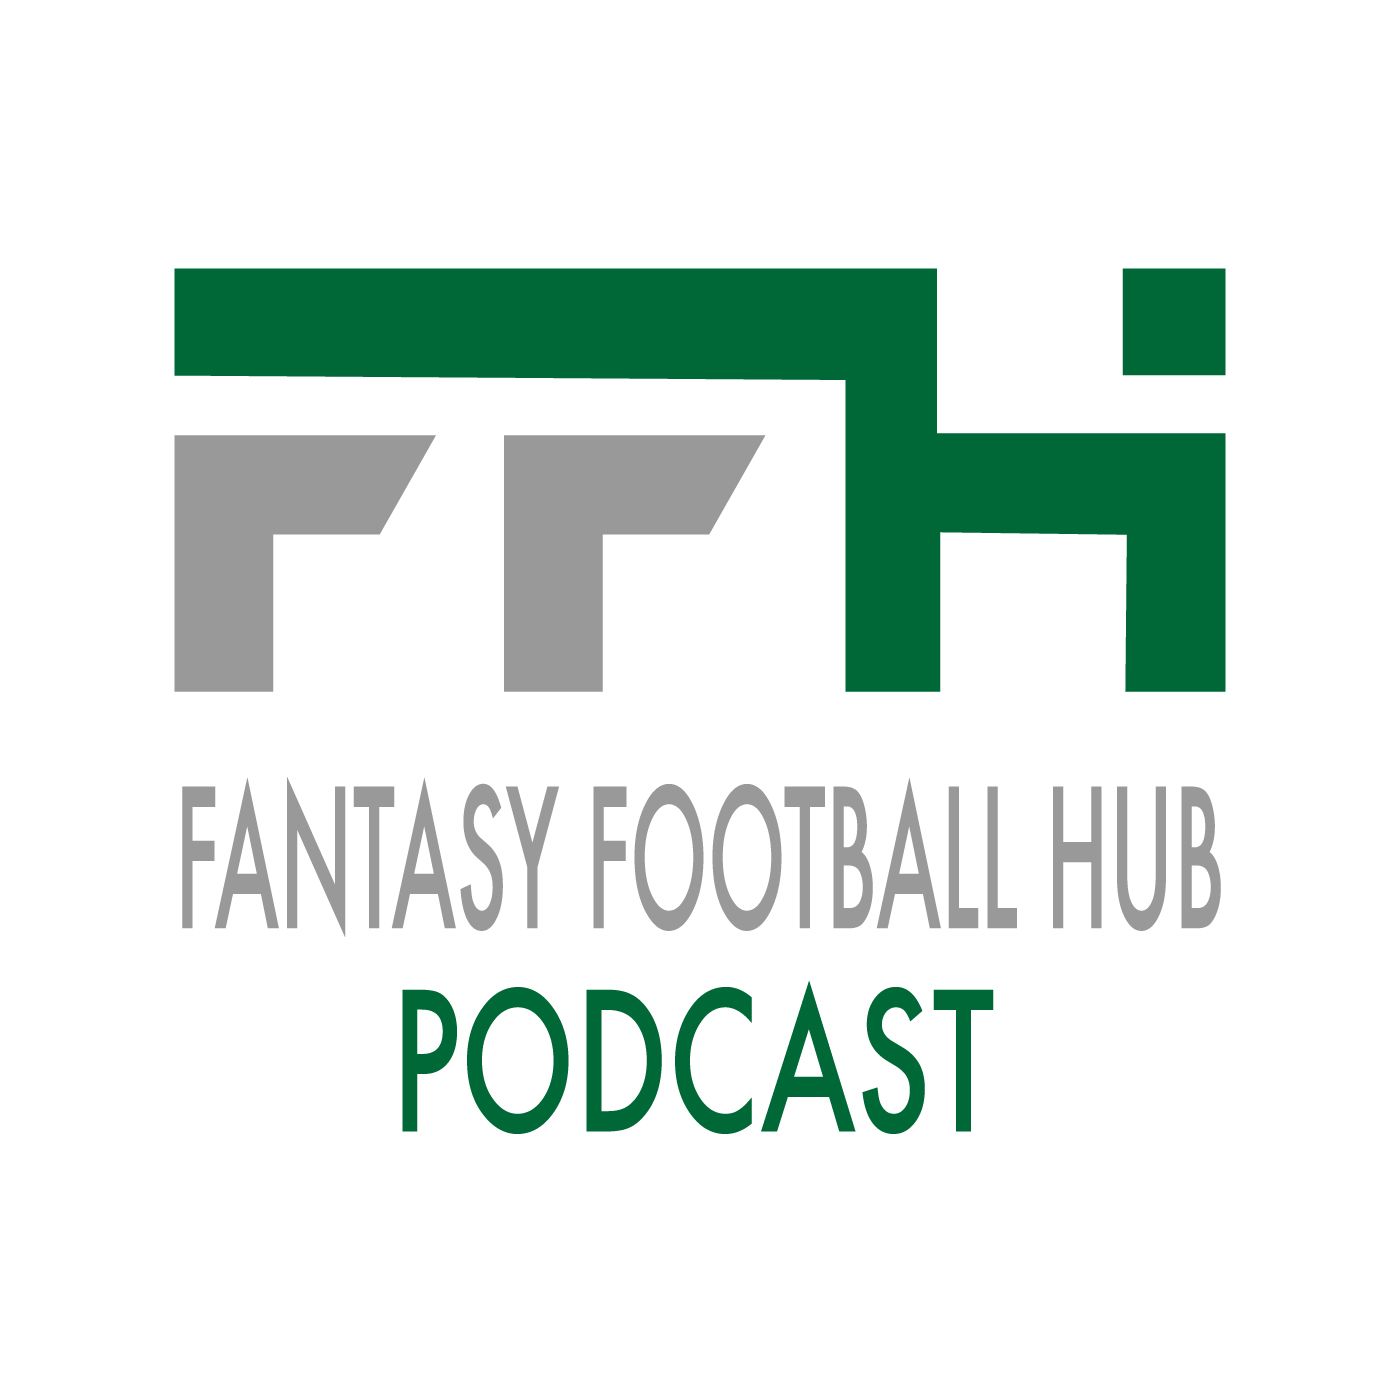 Fantasy Football Hub Podcast